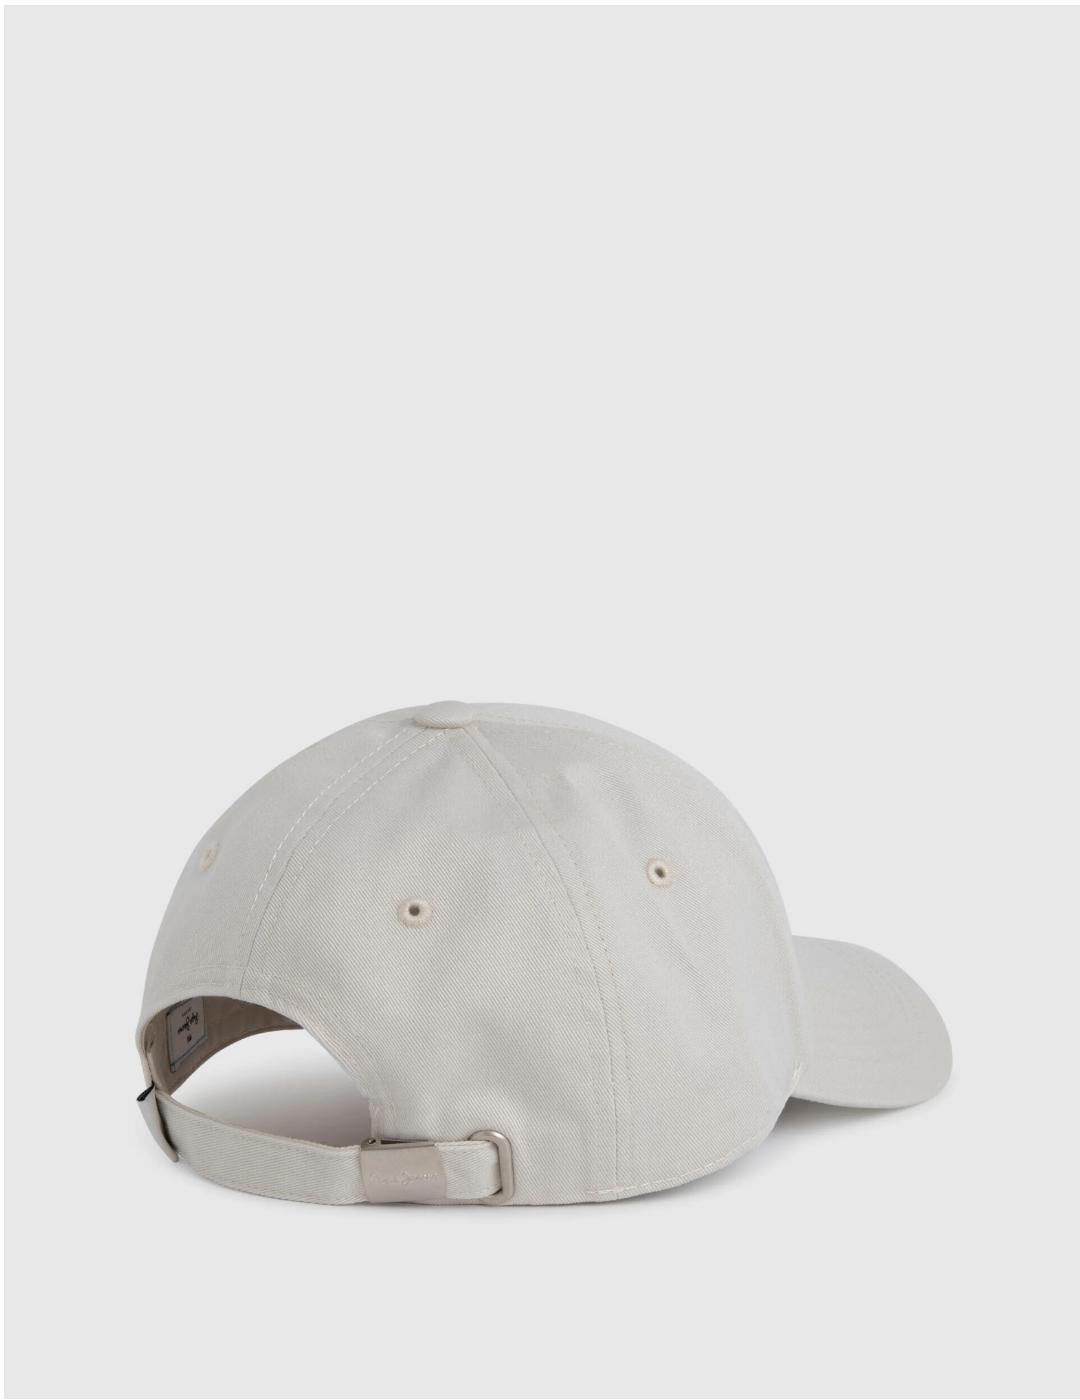 Gorra blanca hombre básica logo bordado